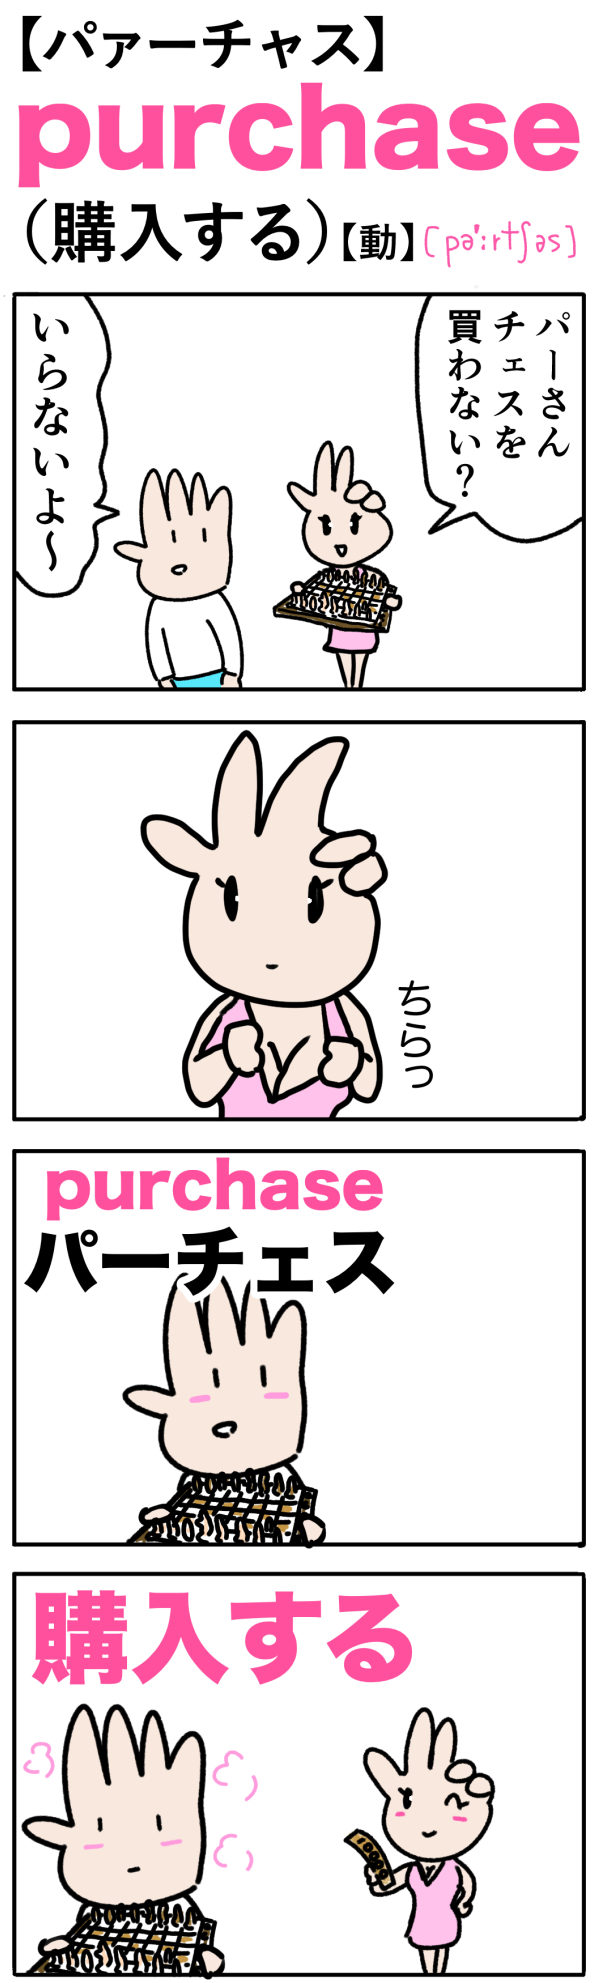 purchase（購入する）の語呂合わせ英単語